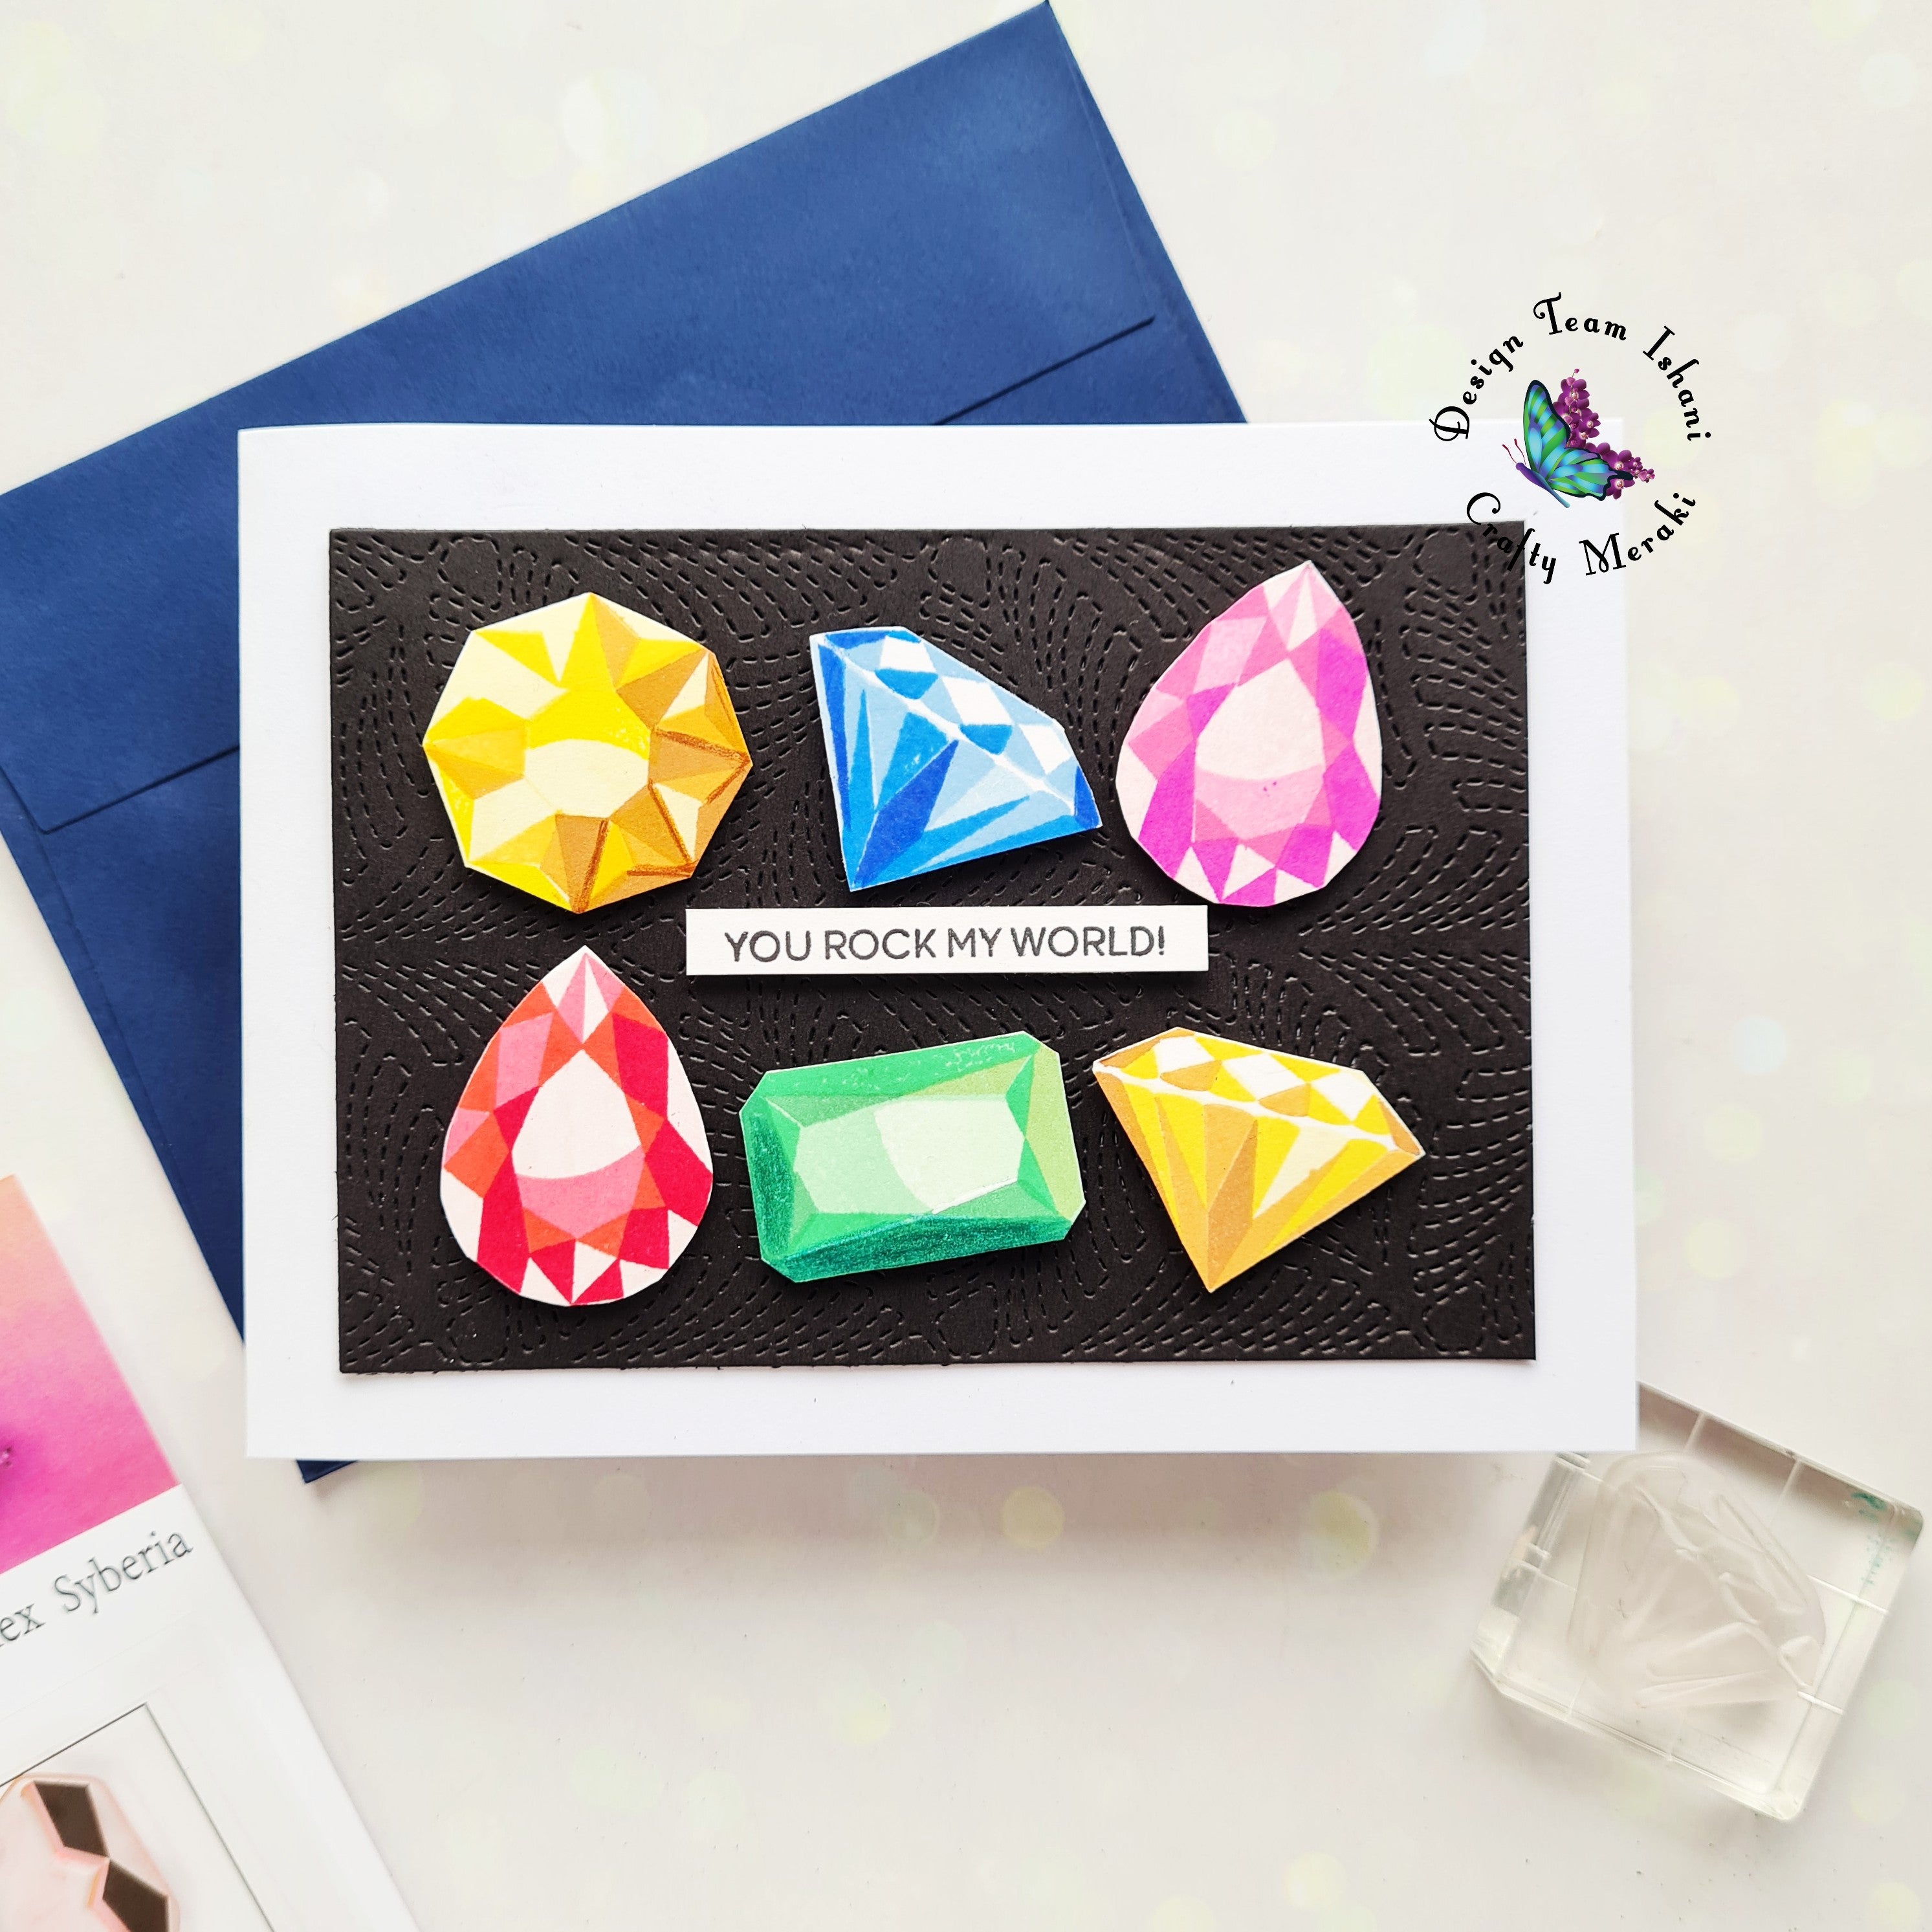 Sparkly gems - Rock! by Ishani